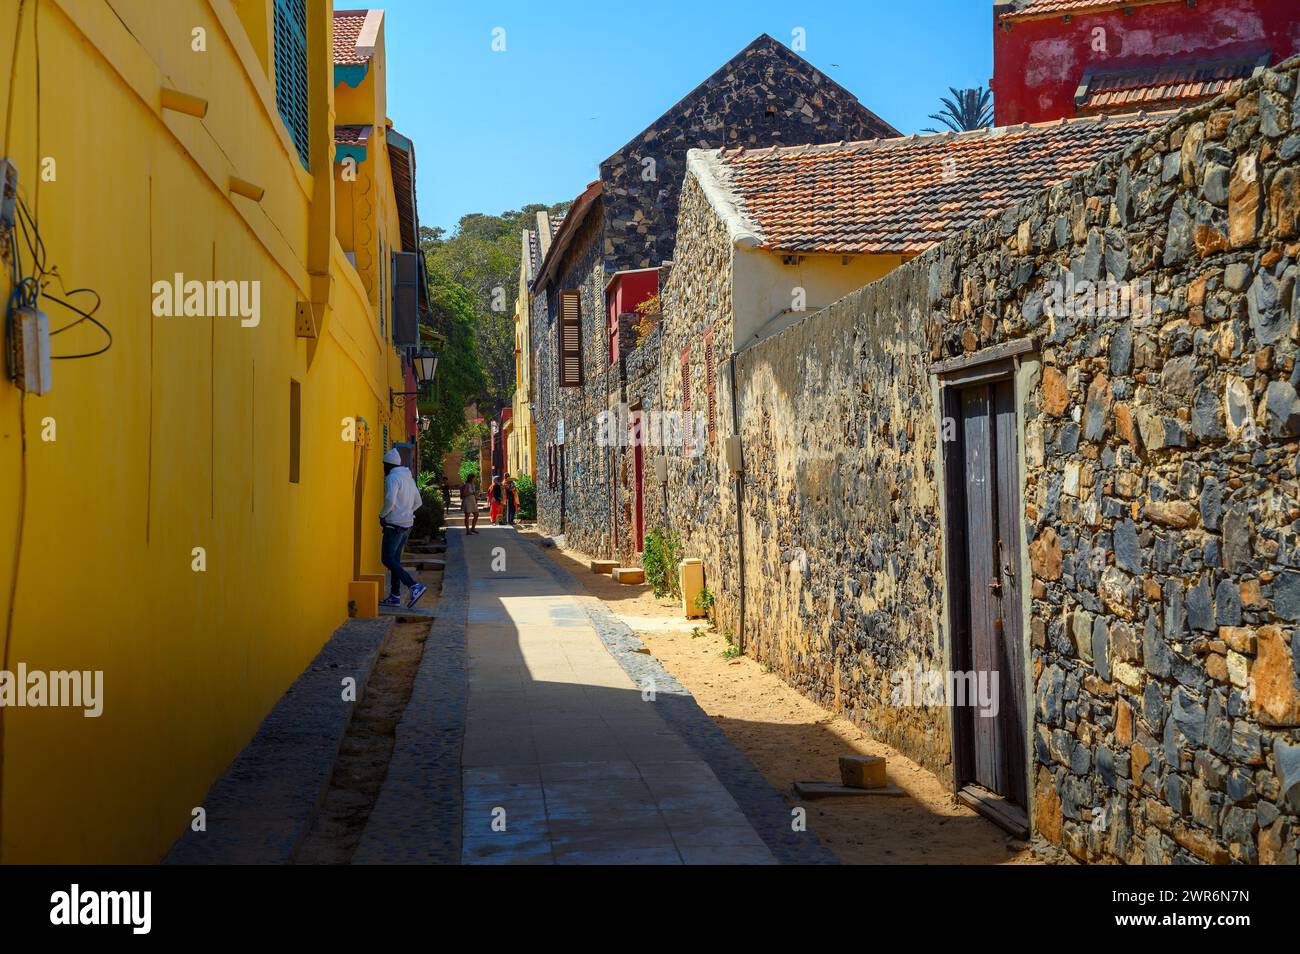 Les bâtiments colorés et les rues sablonneuses de l'île Gorée au Sénégal, en Afrique de l'Ouest Banque D'Images